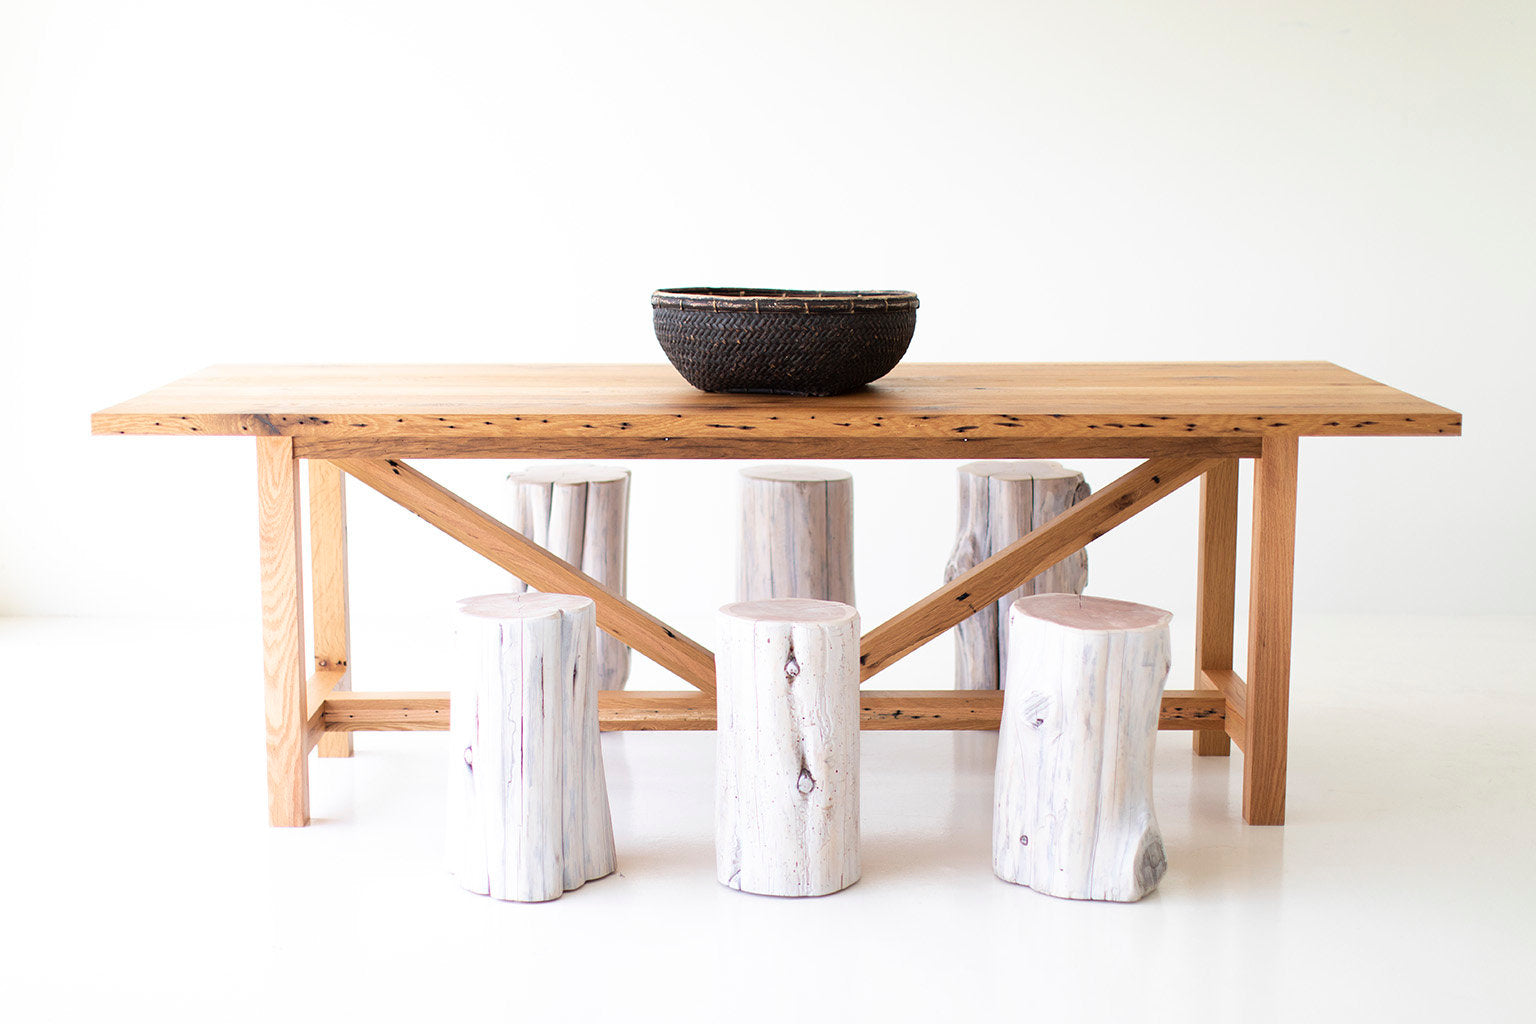 The Farmhouse Dining Table - 0618 - Reclaimed Oak